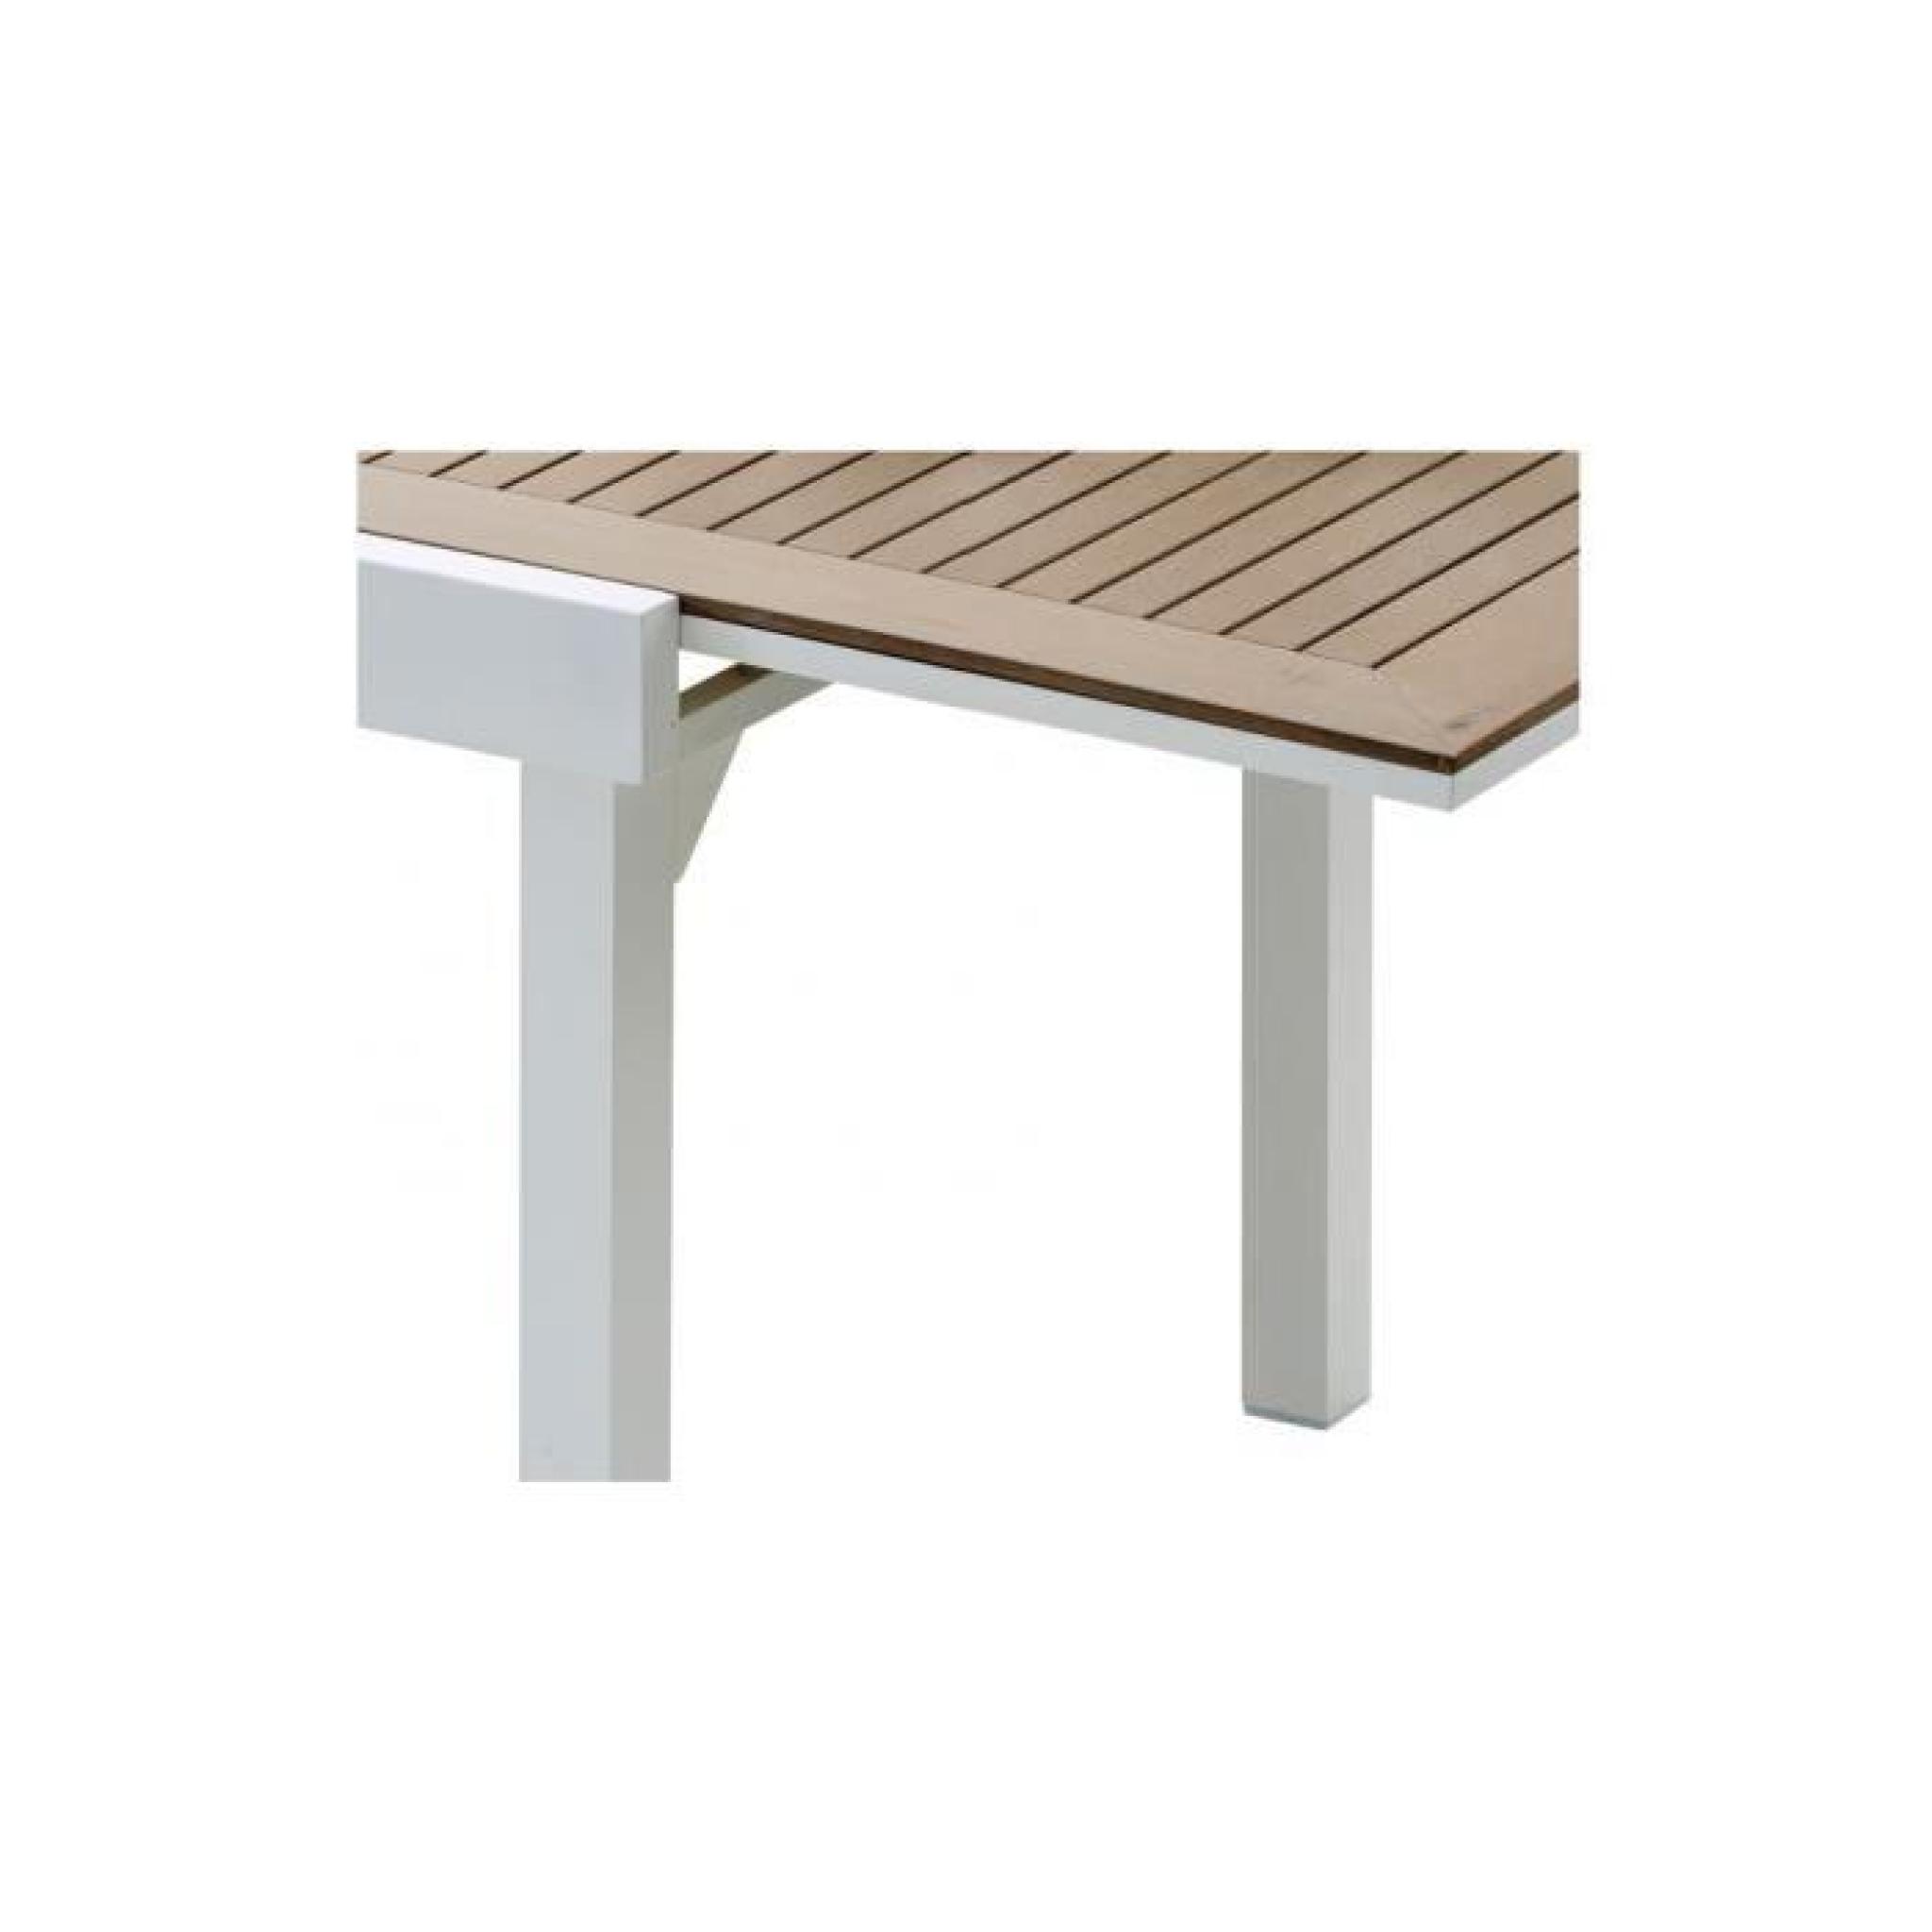 Table de jardin carrée extensible aluminium blanc et polywood L90 pas cher